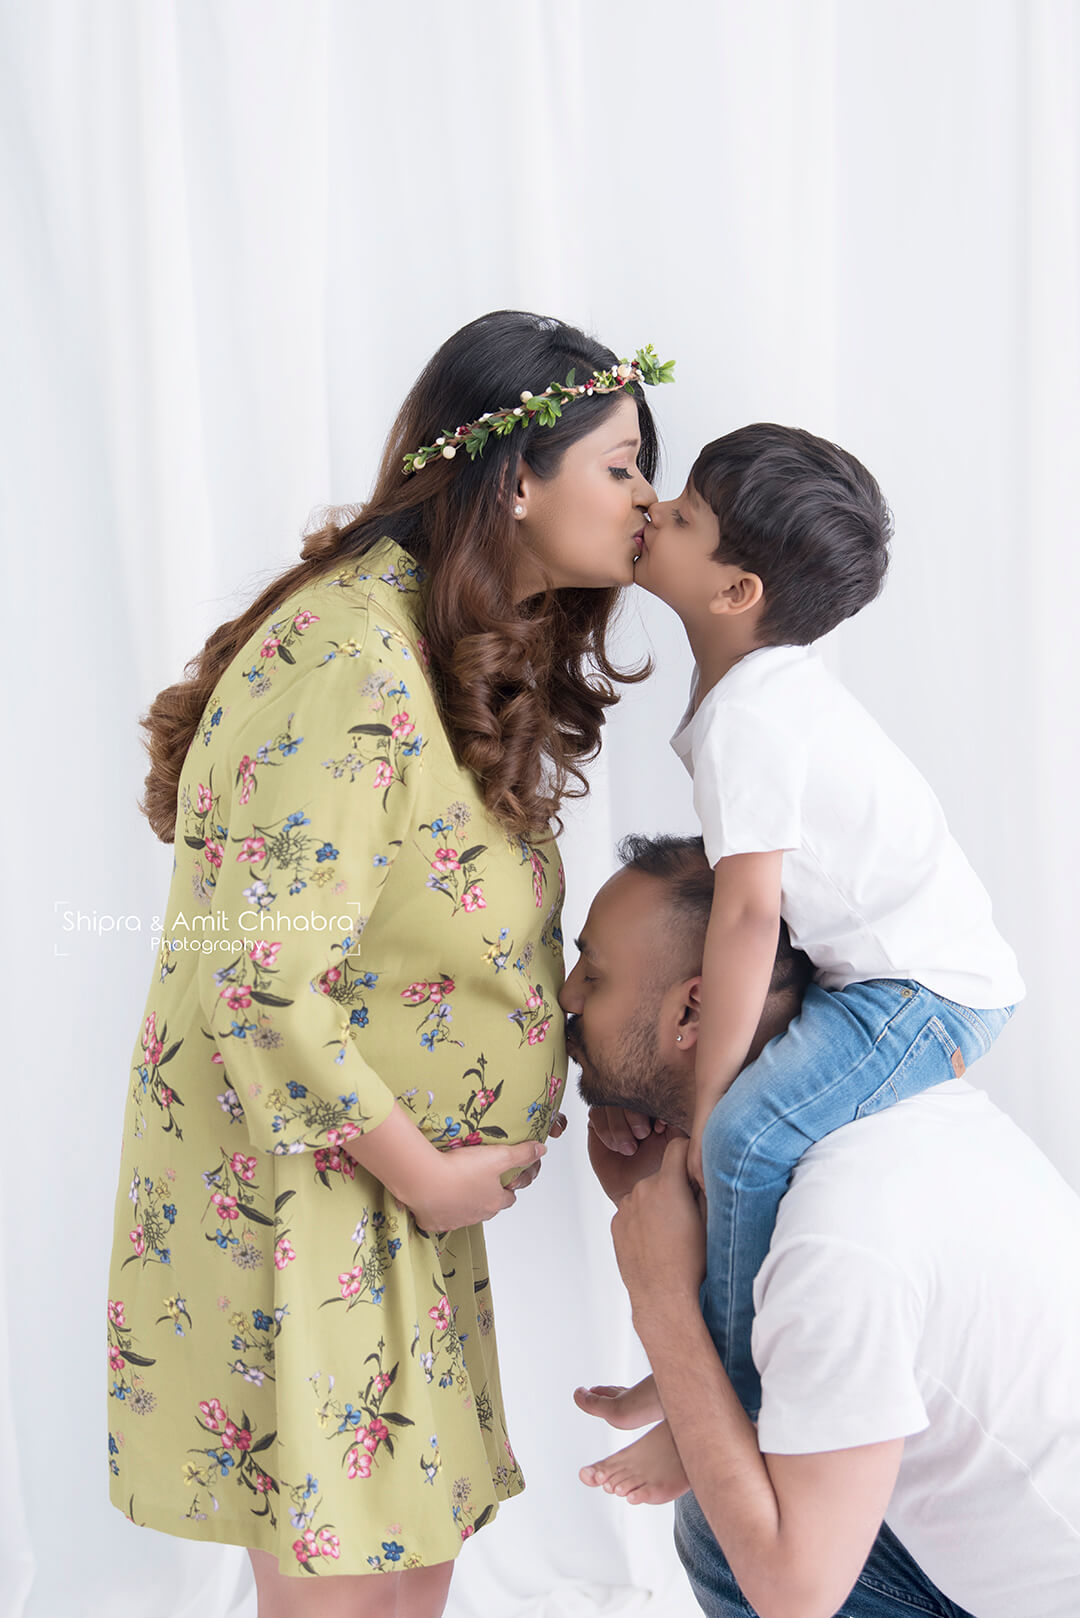 Best Maternity Photoshoot Ideas - Maternity Photo Jaipur - MatrixStudio.in